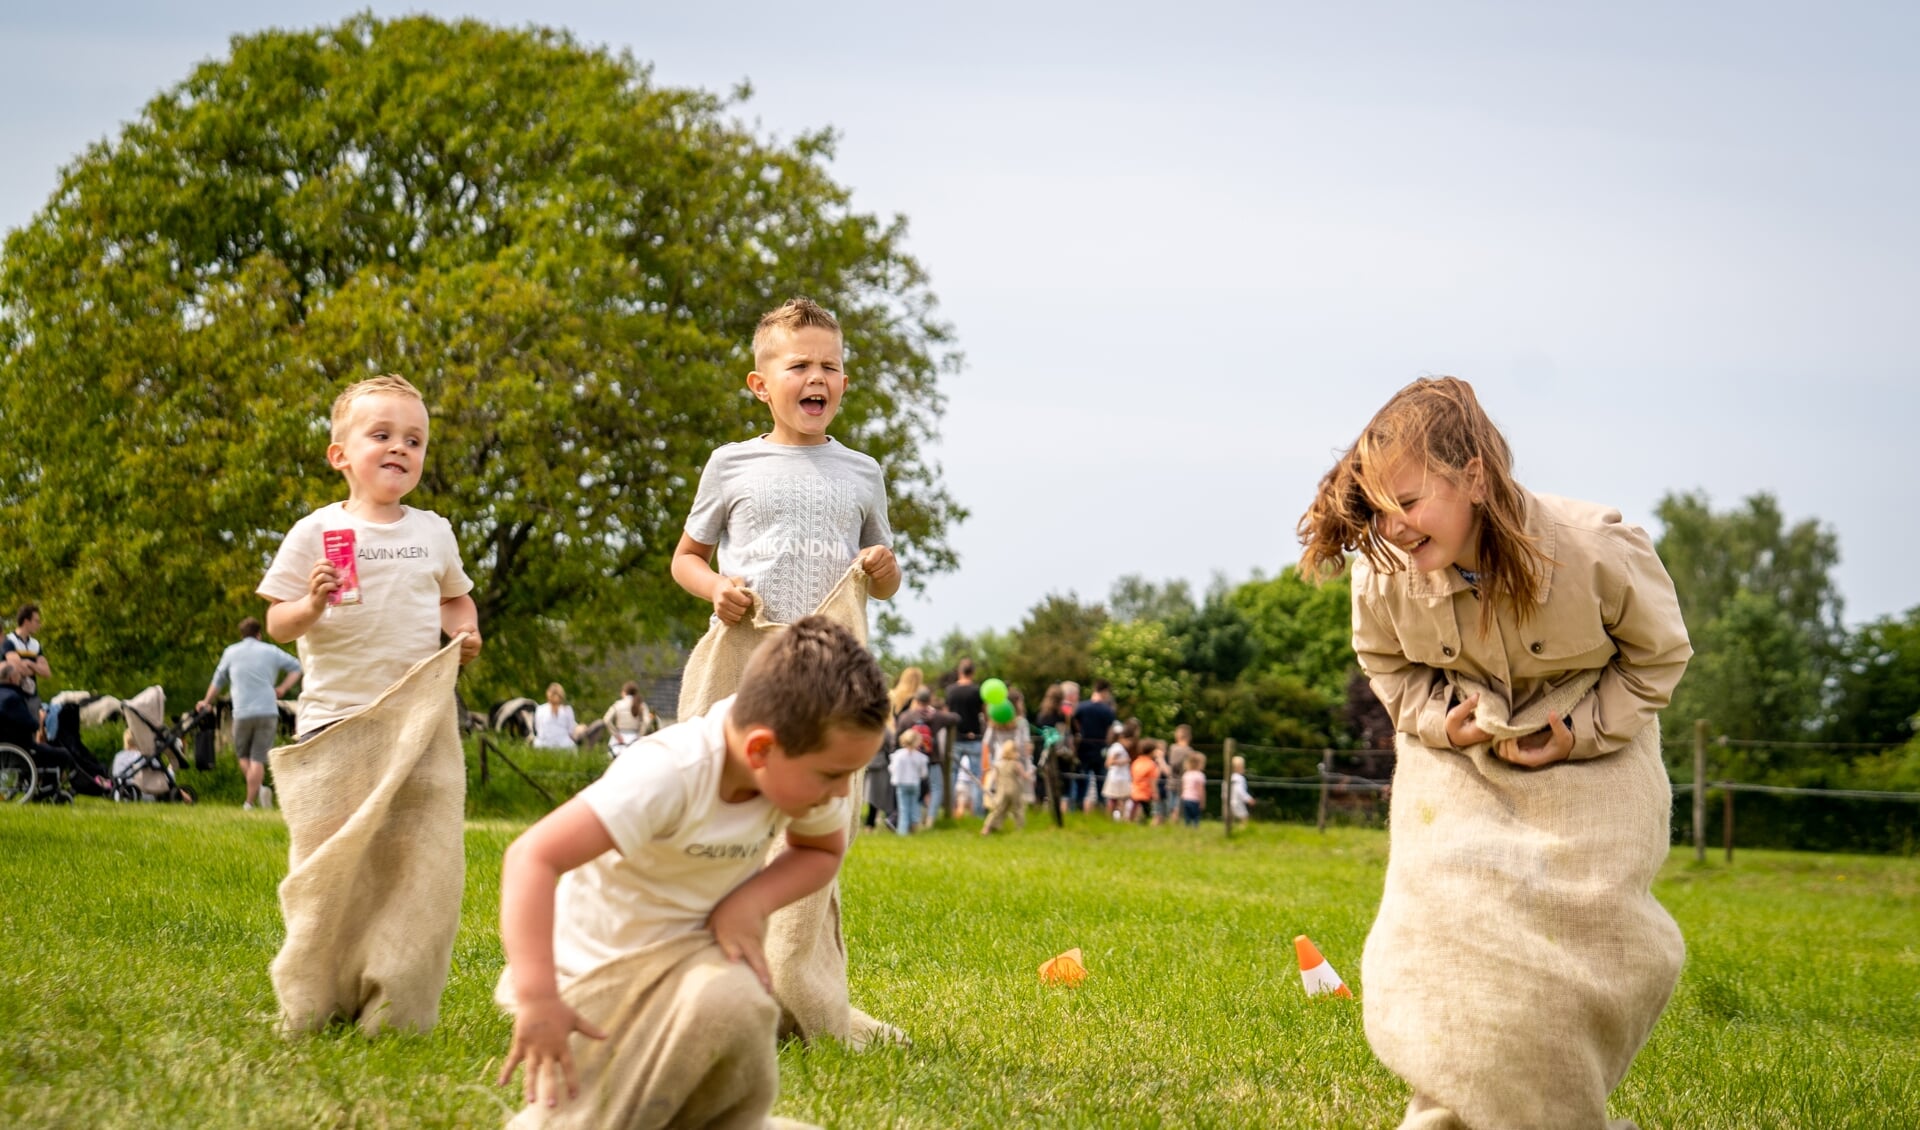 • De kinderen hadden veel plezier tijdens de Campina Open Boerderijdag in Lienden. 